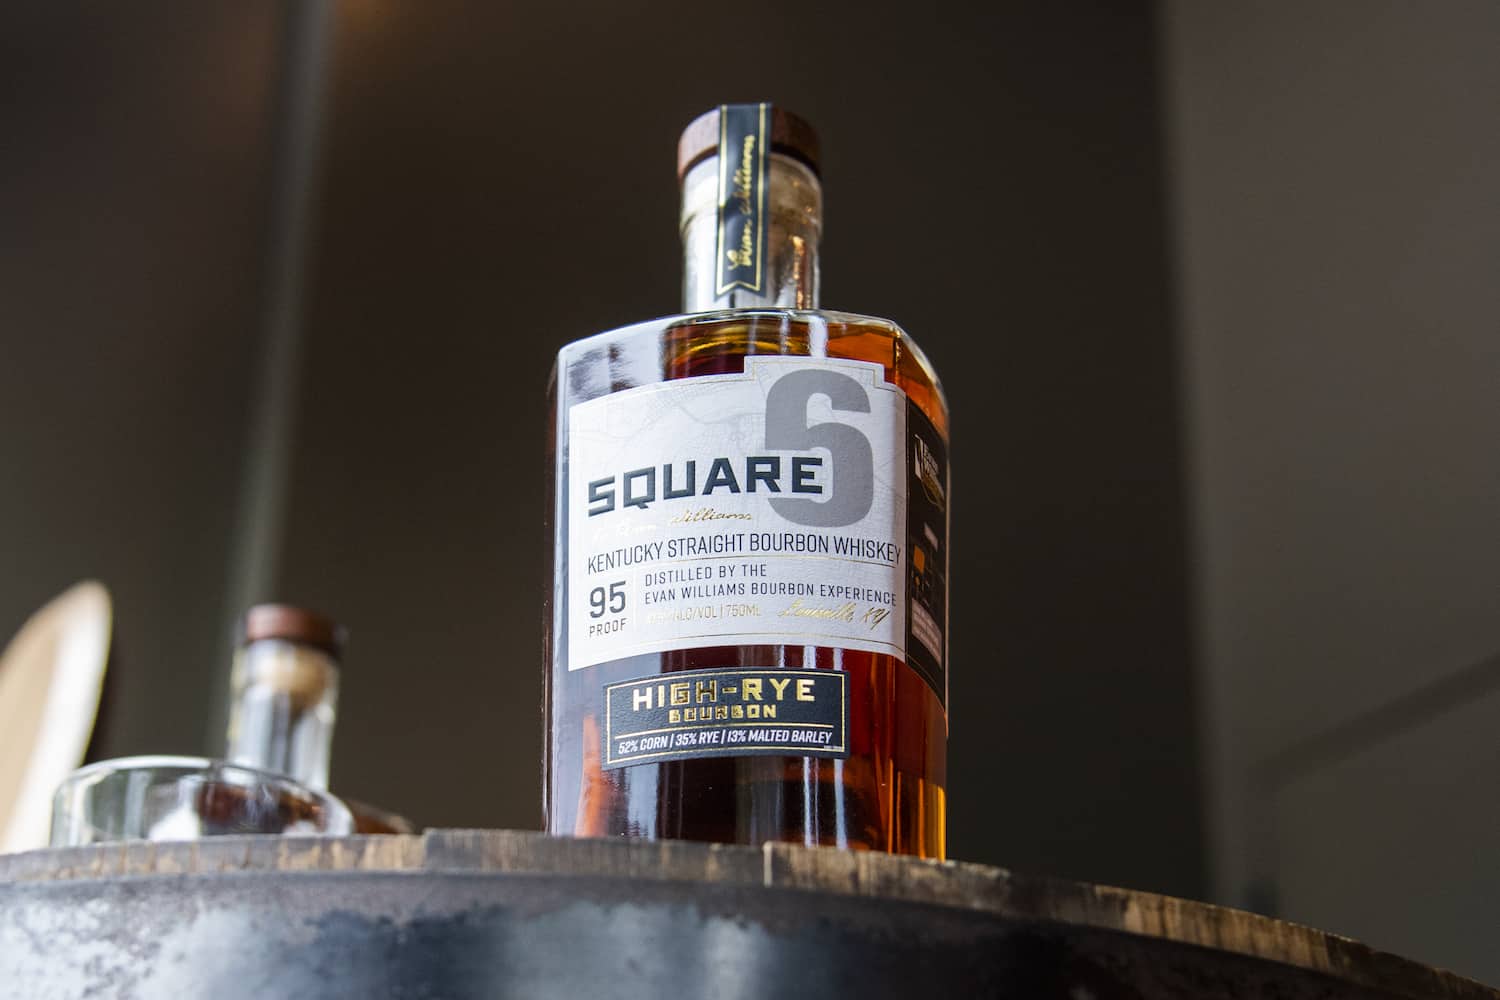 Bottle of Square 6 high rye Bourbon